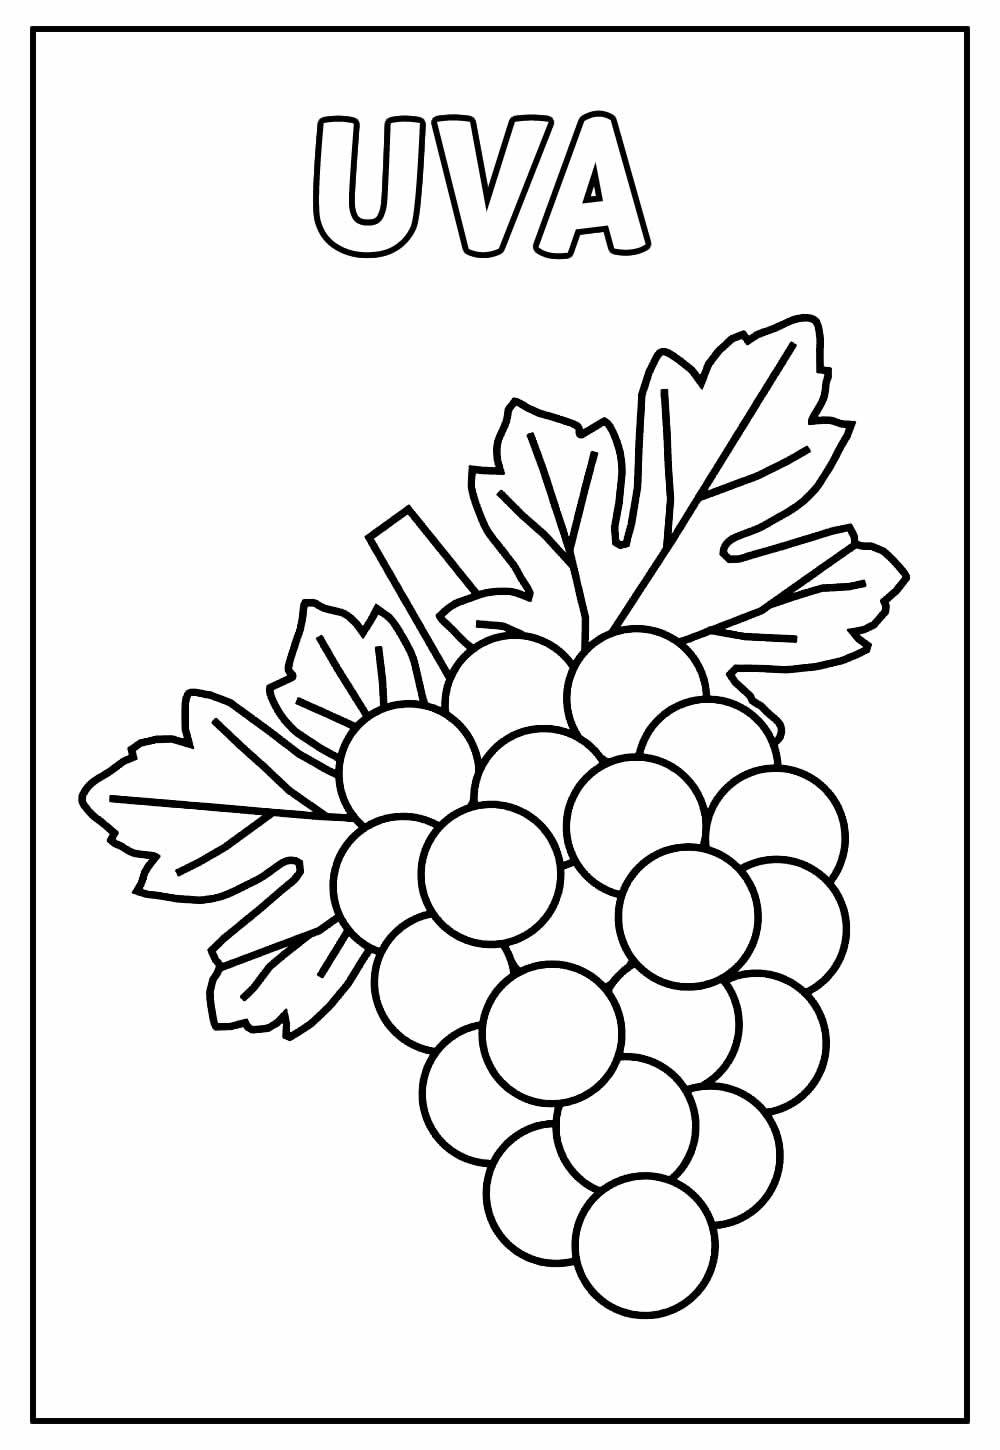 Desenho de Uva para colorir